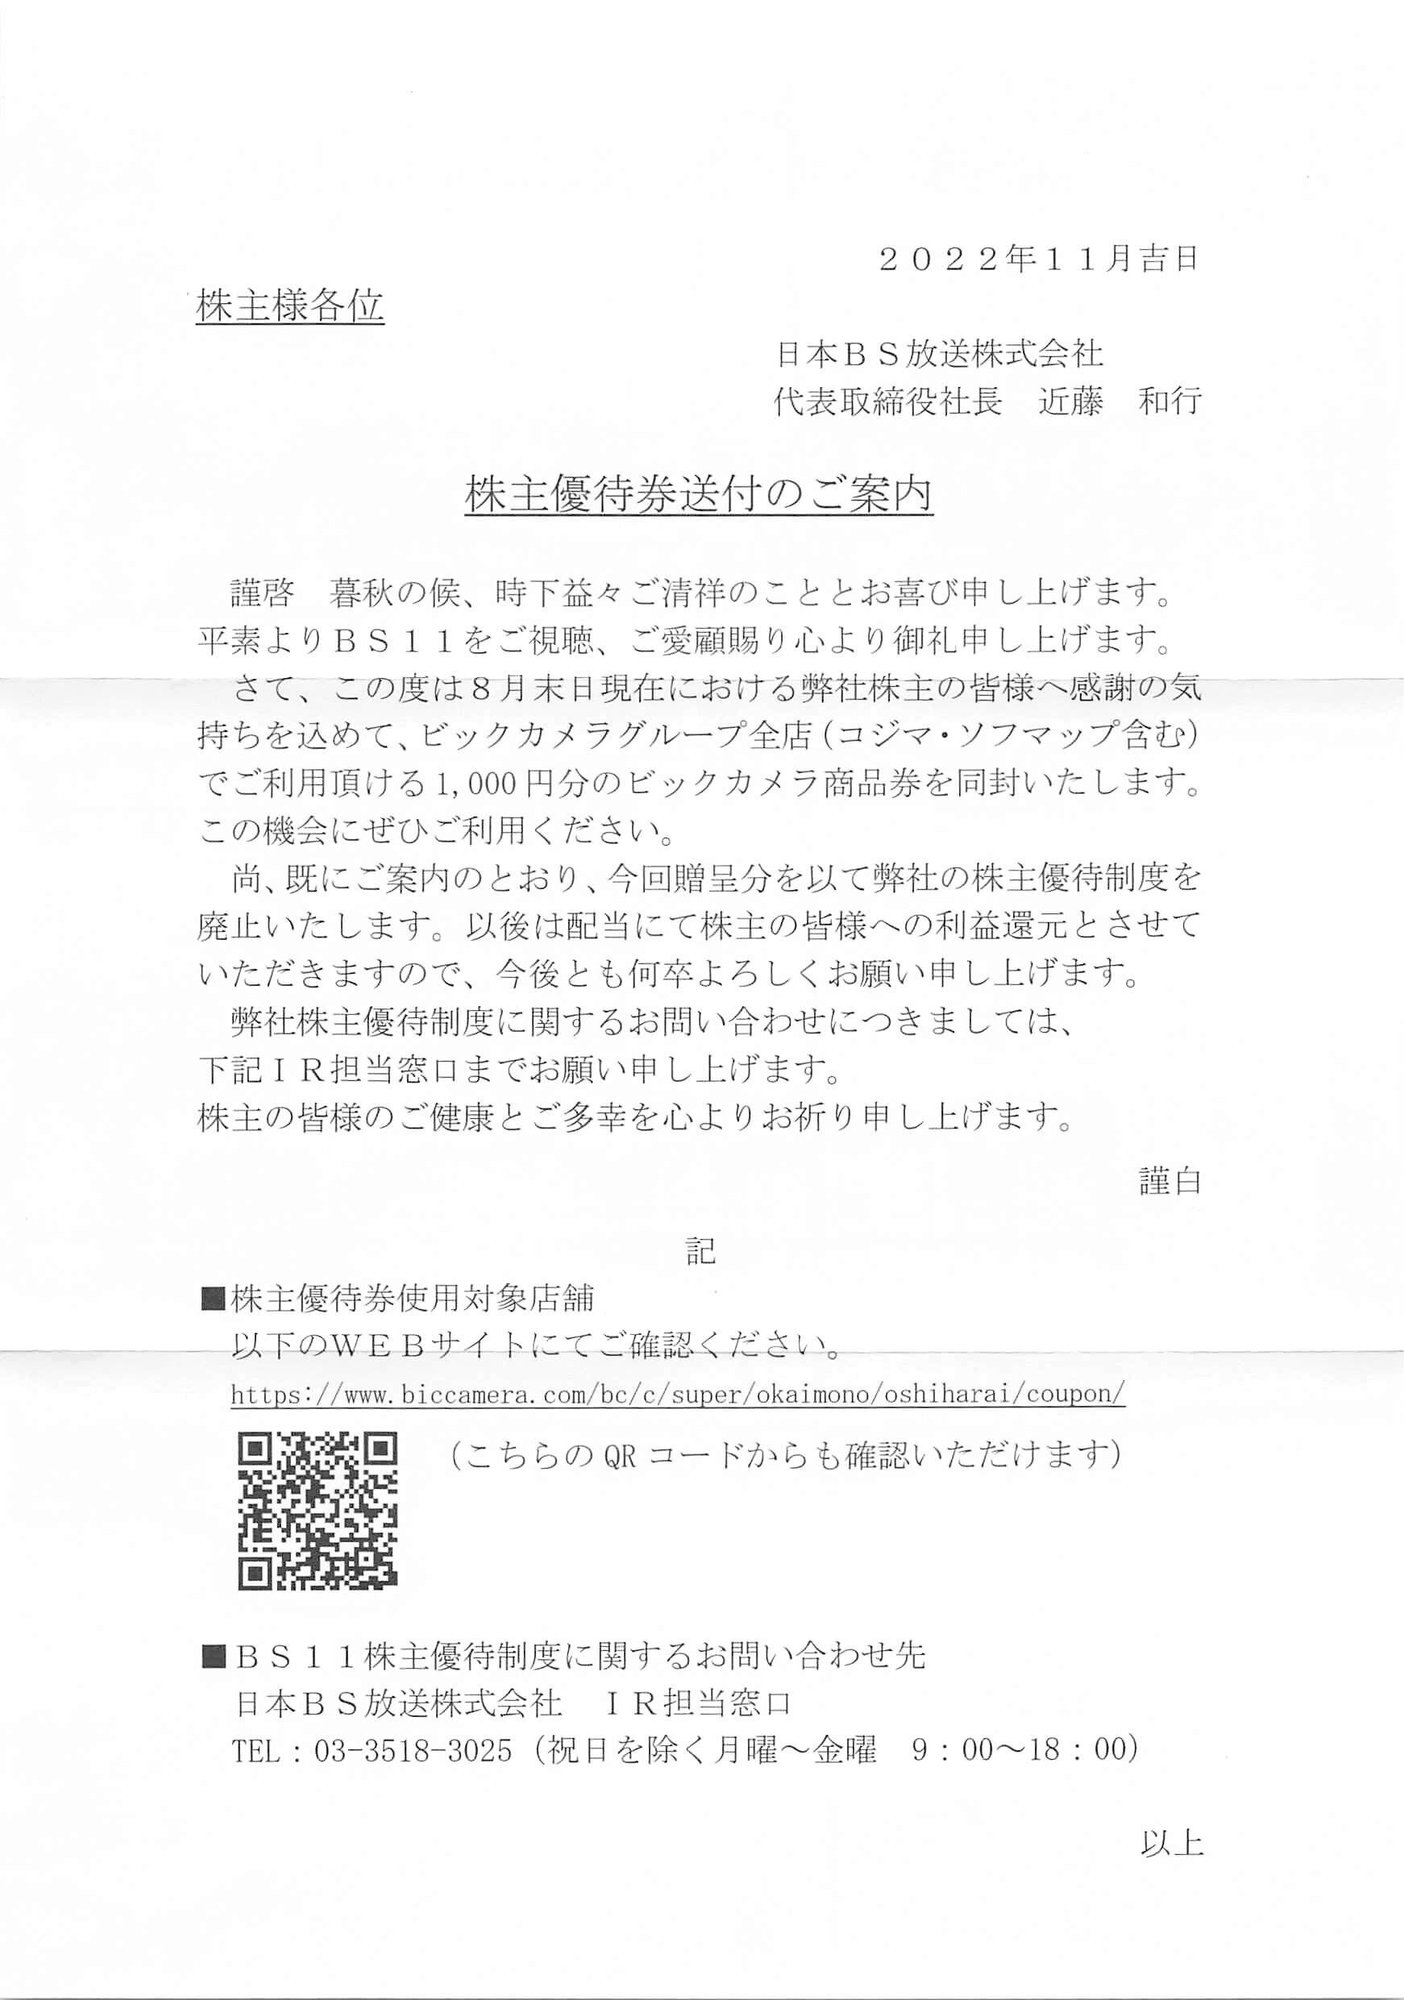 日本bs放送 9414 優待廃止 甘露ナイキ Nike Kanro Note